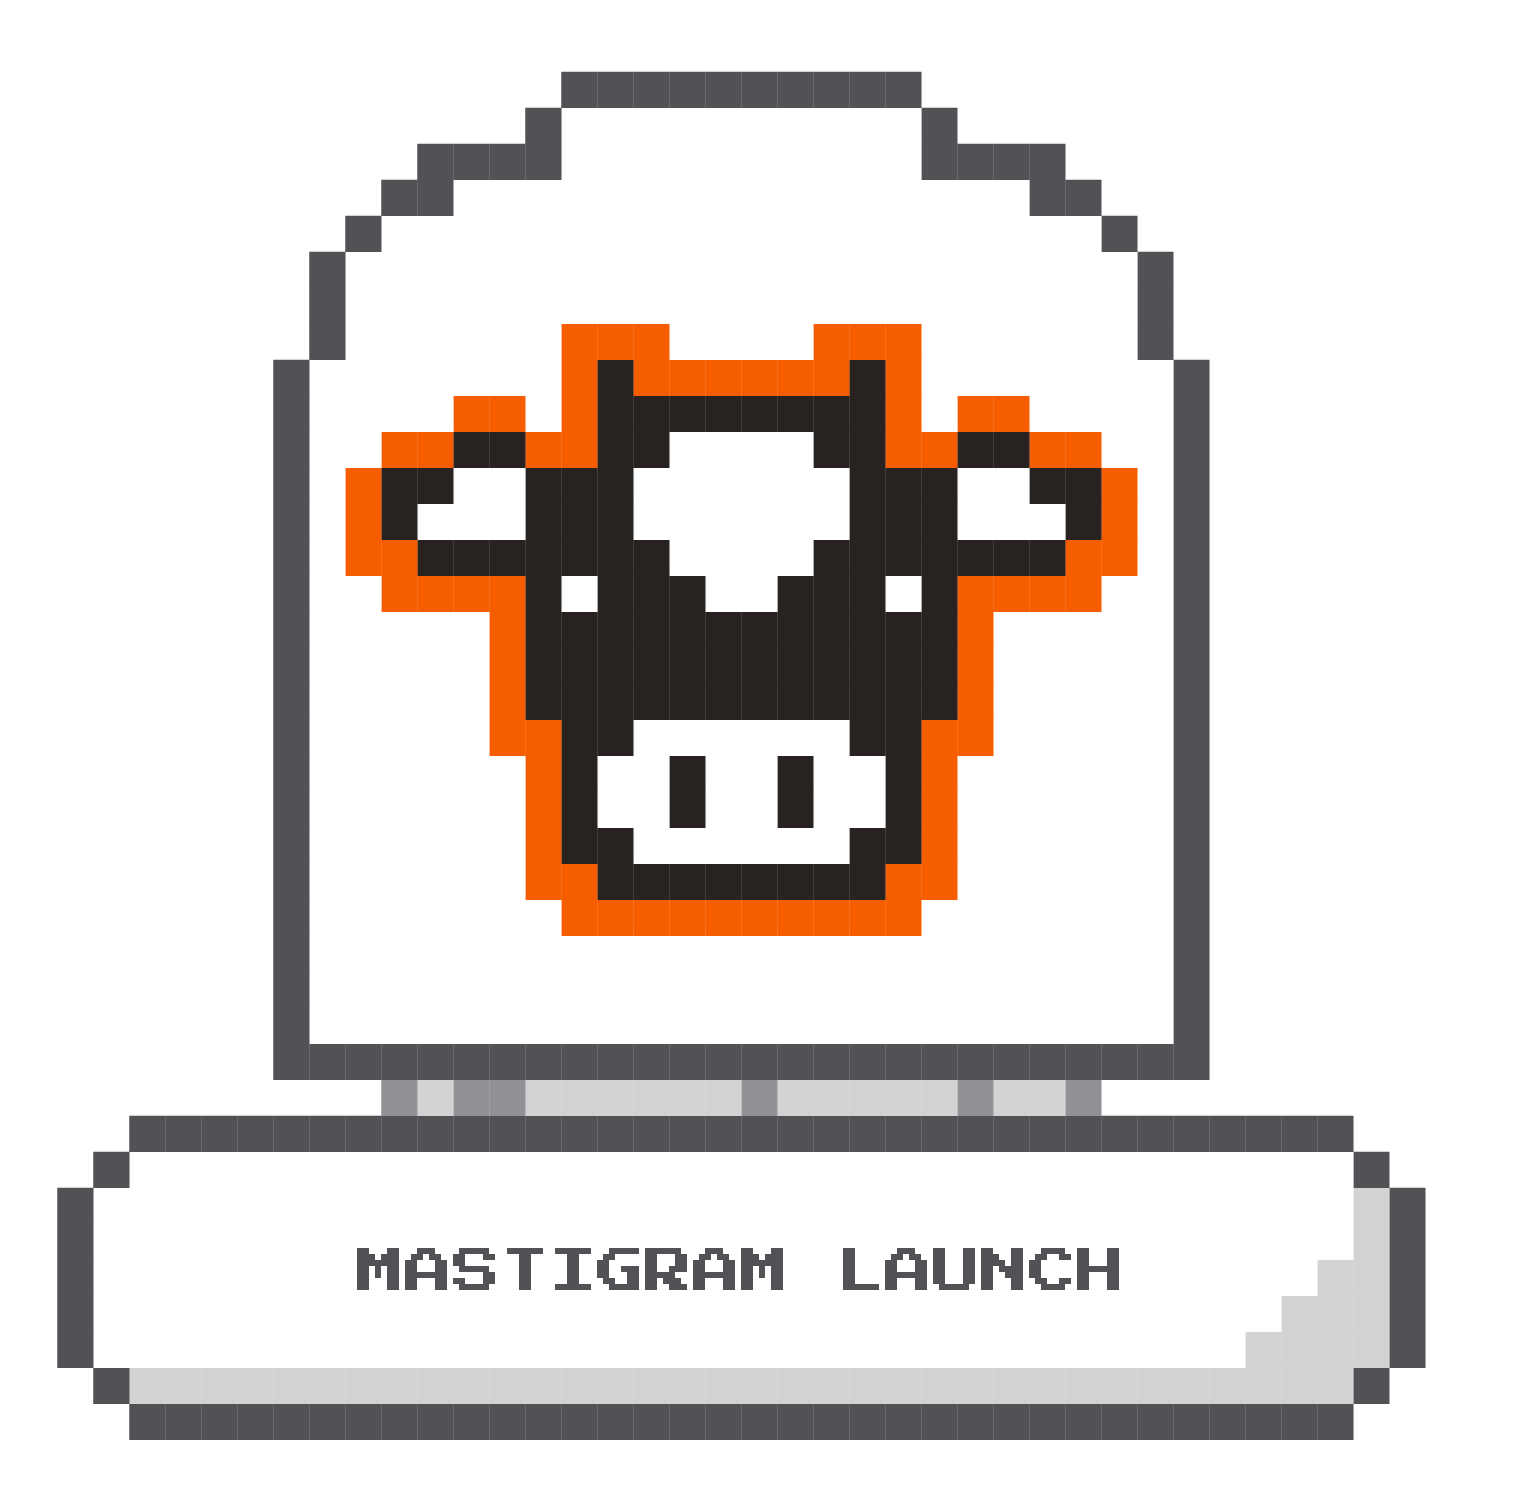 Mastigram Launch